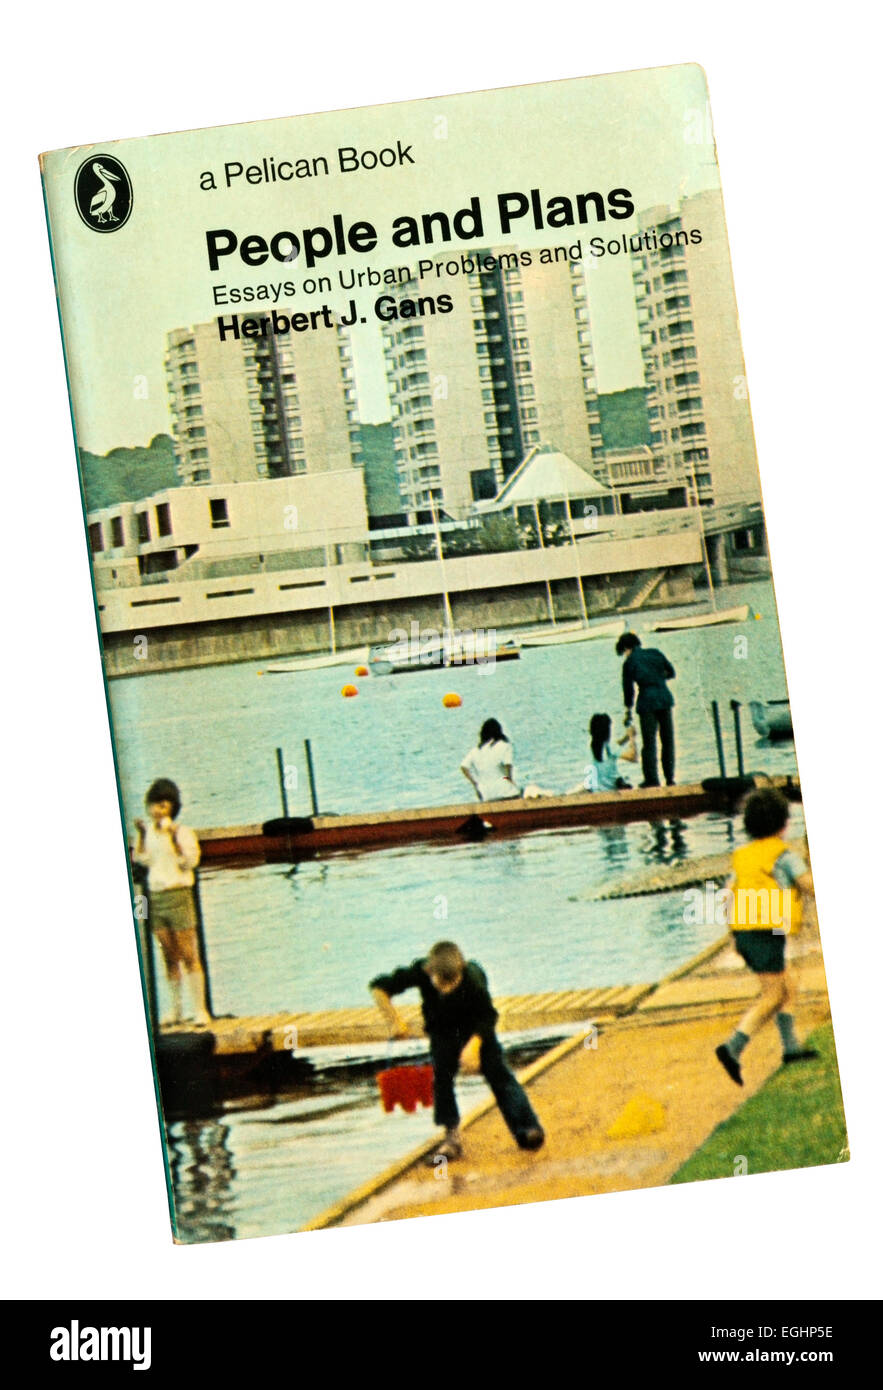 Persone e piani : saggi su problemi urbani e soluzioni di Herbert J. Gans è stato pubblicato per la prima volta nel 1968. Foto Stock